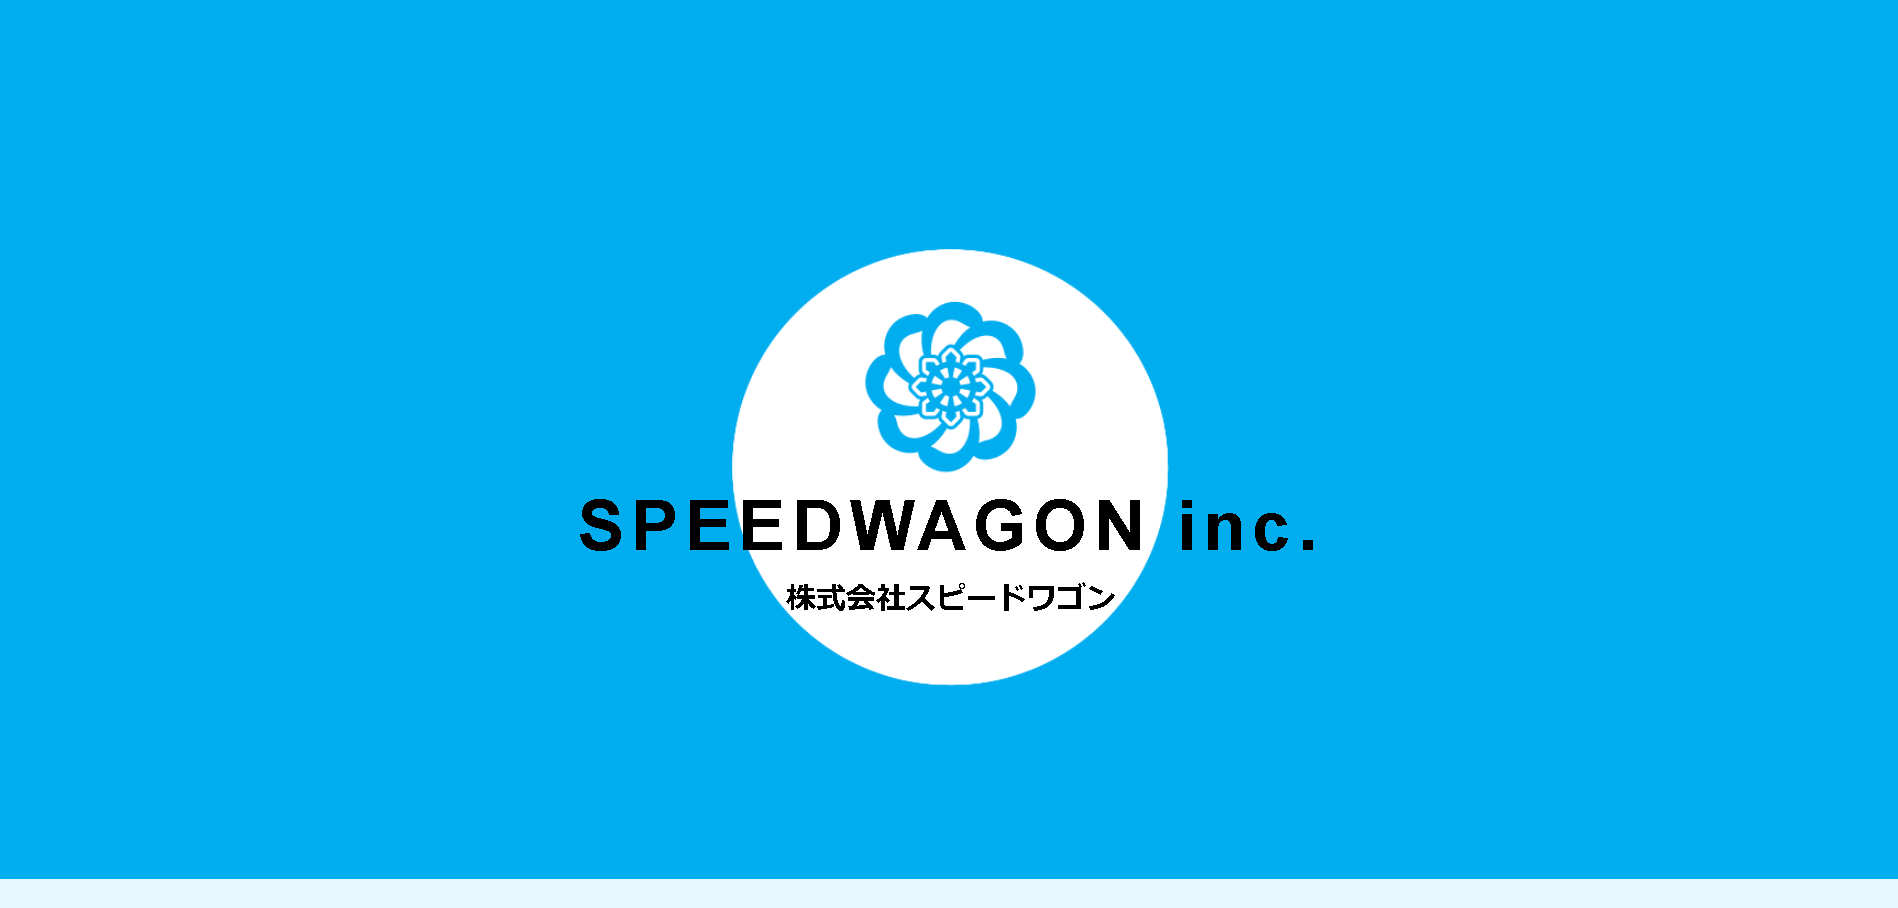 株式会社スピードワゴンの株式会社スピードワゴンサービス